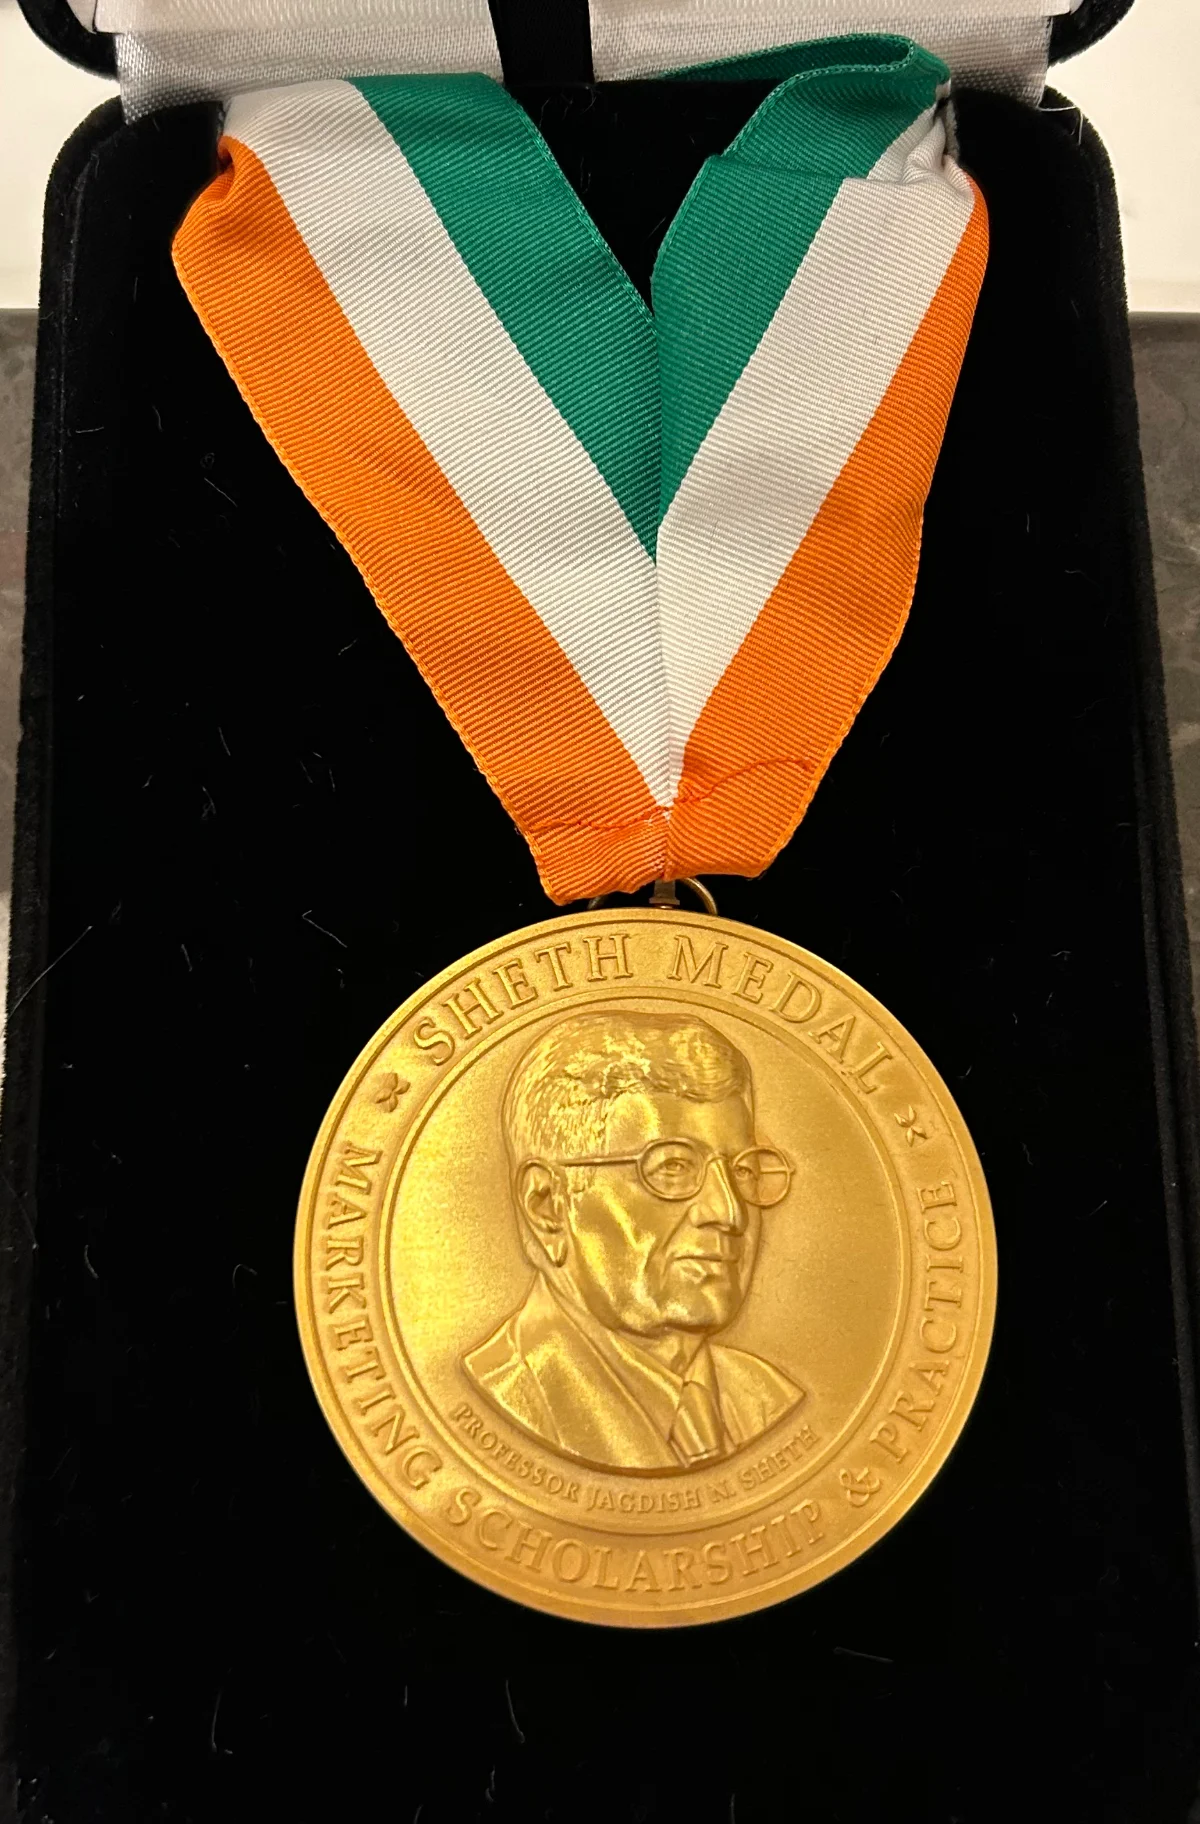 Sheth Medal